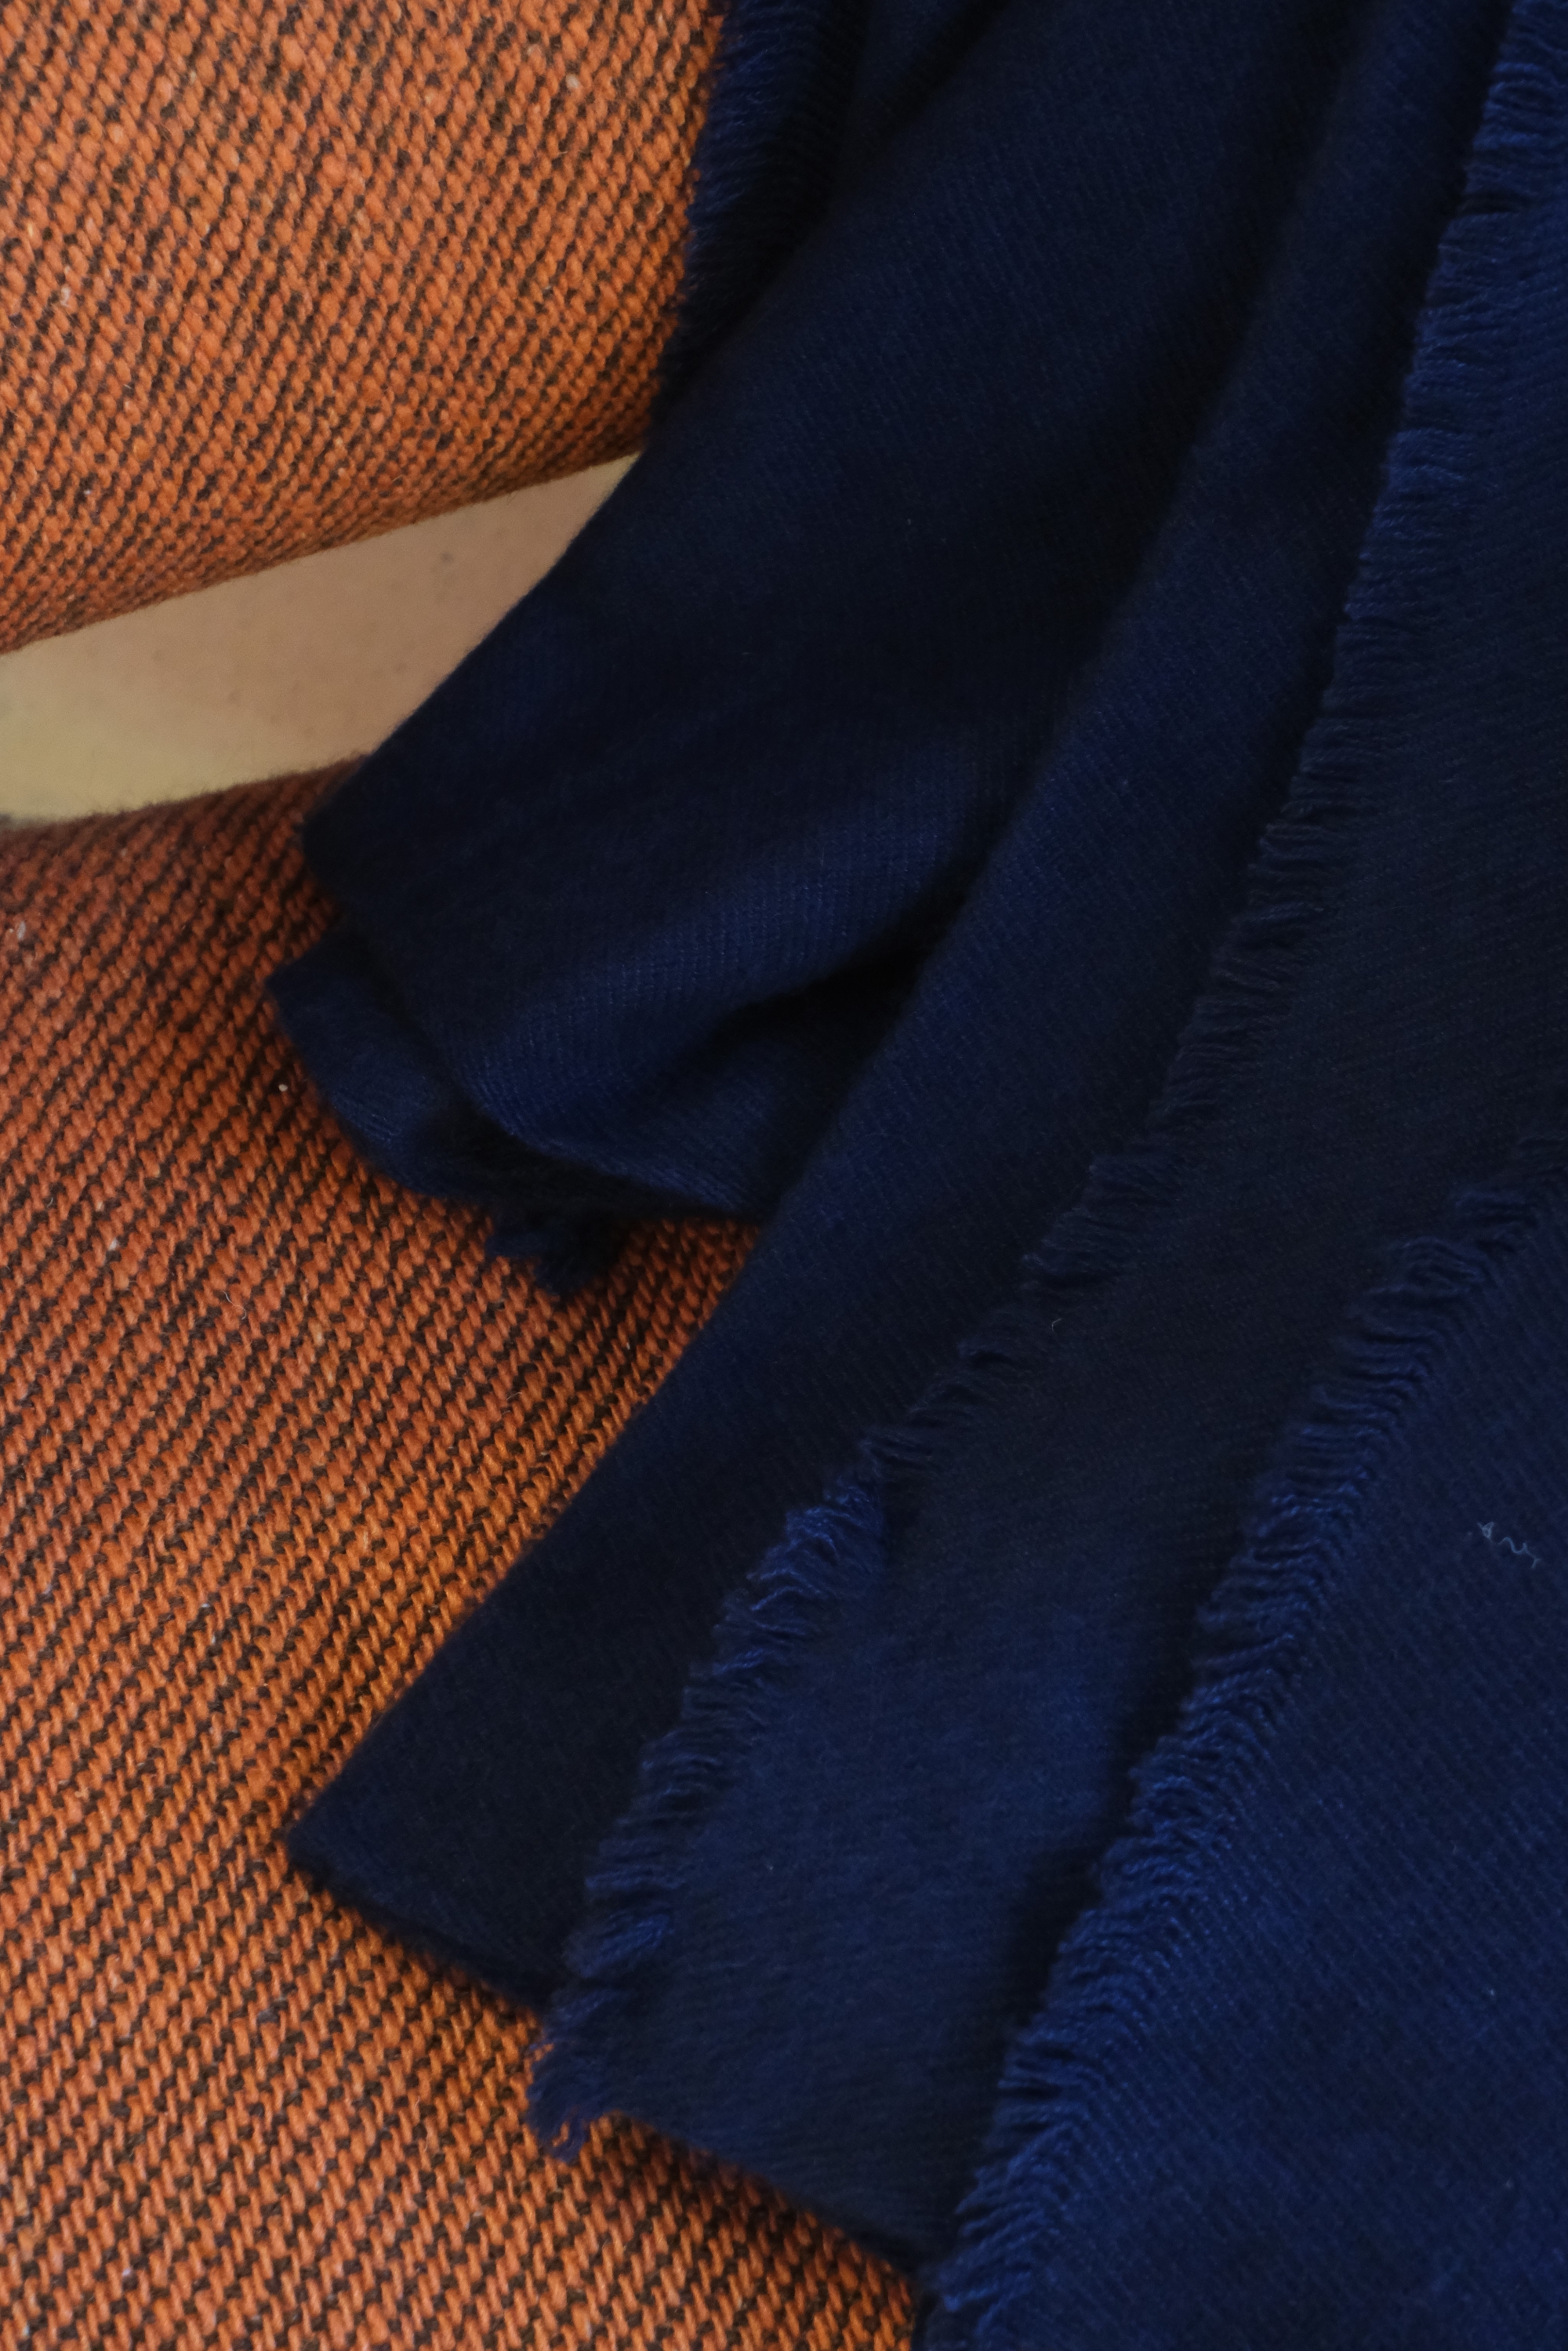 Cachemire accessoires couvertures plaids toodoo plain xl 240 x 260 bleu marine 240 x 260 cm